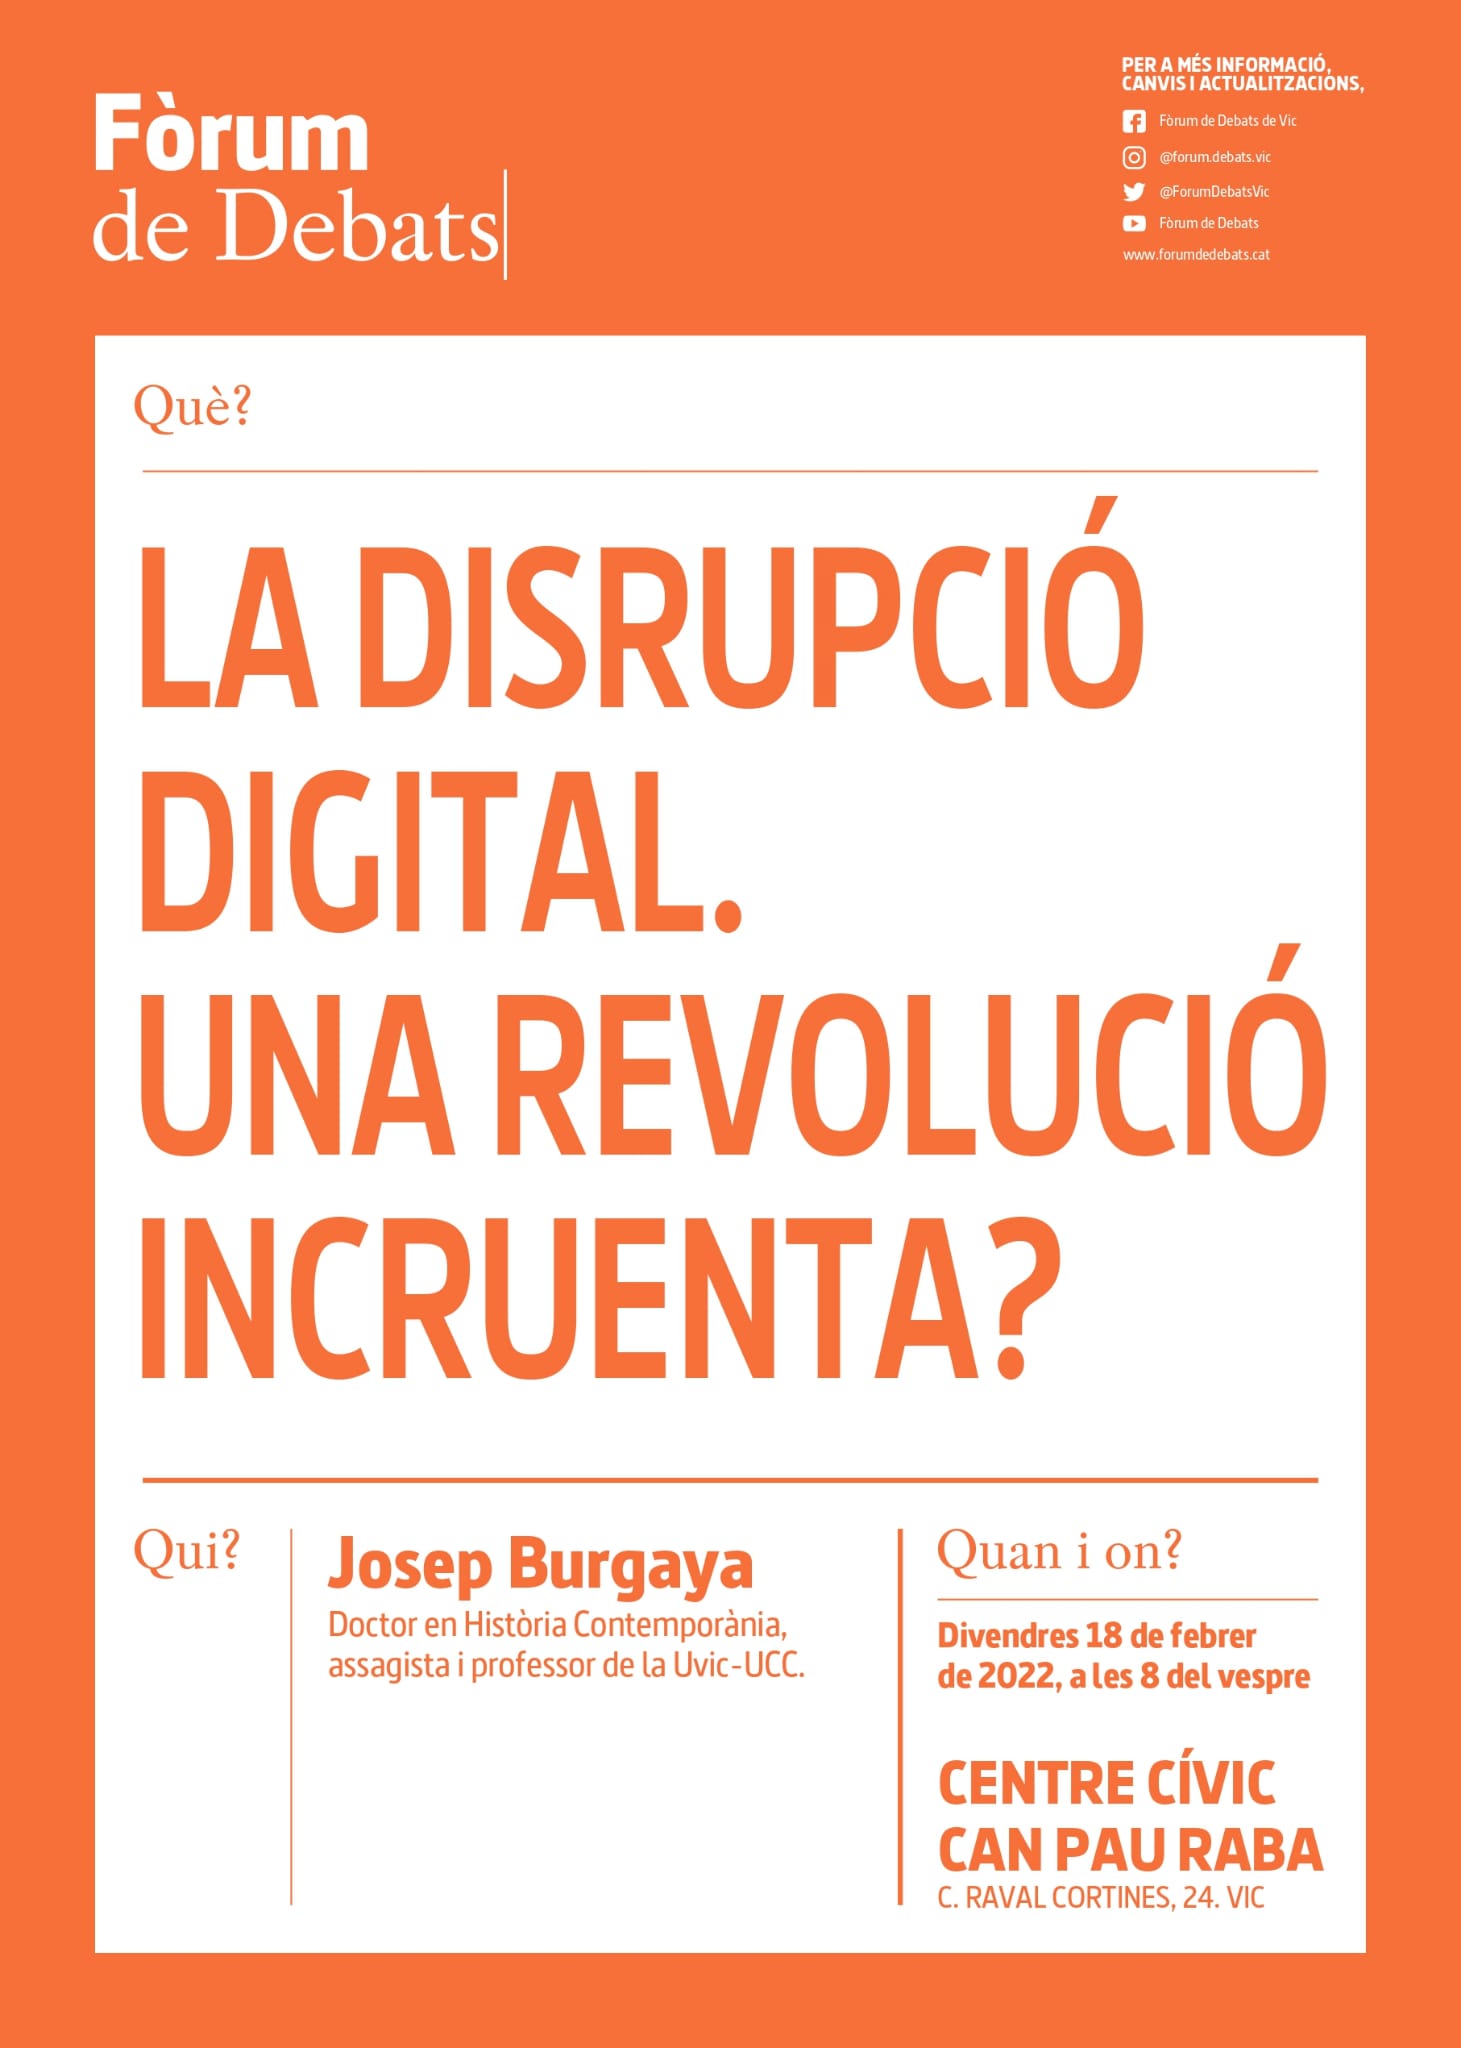 La disrupció digital. Una revolució incruenta? Per Josep Burgaya Divendres 18 de febrer a les 8, a Can Pau Raba